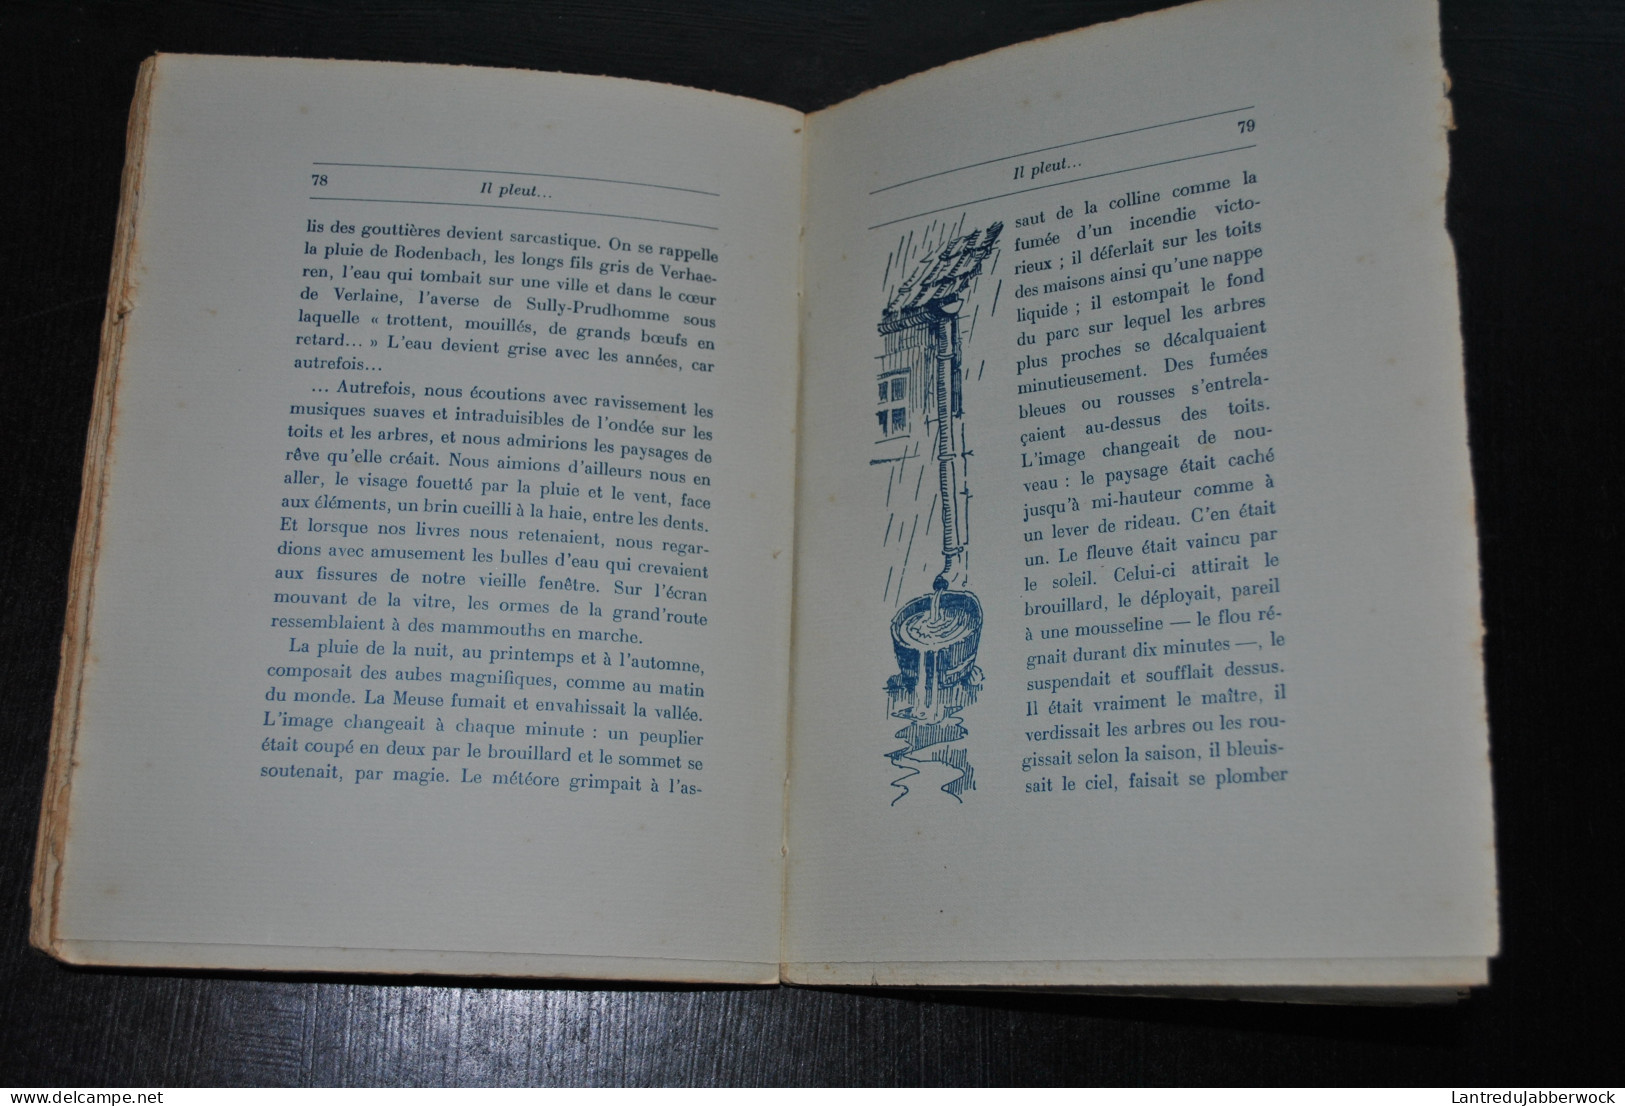 TOUSSEUL Jean Images et souvenirs Georges THONE 1931 Illustrations de Léon Jurdan Régionalisme régionaliste Landenne